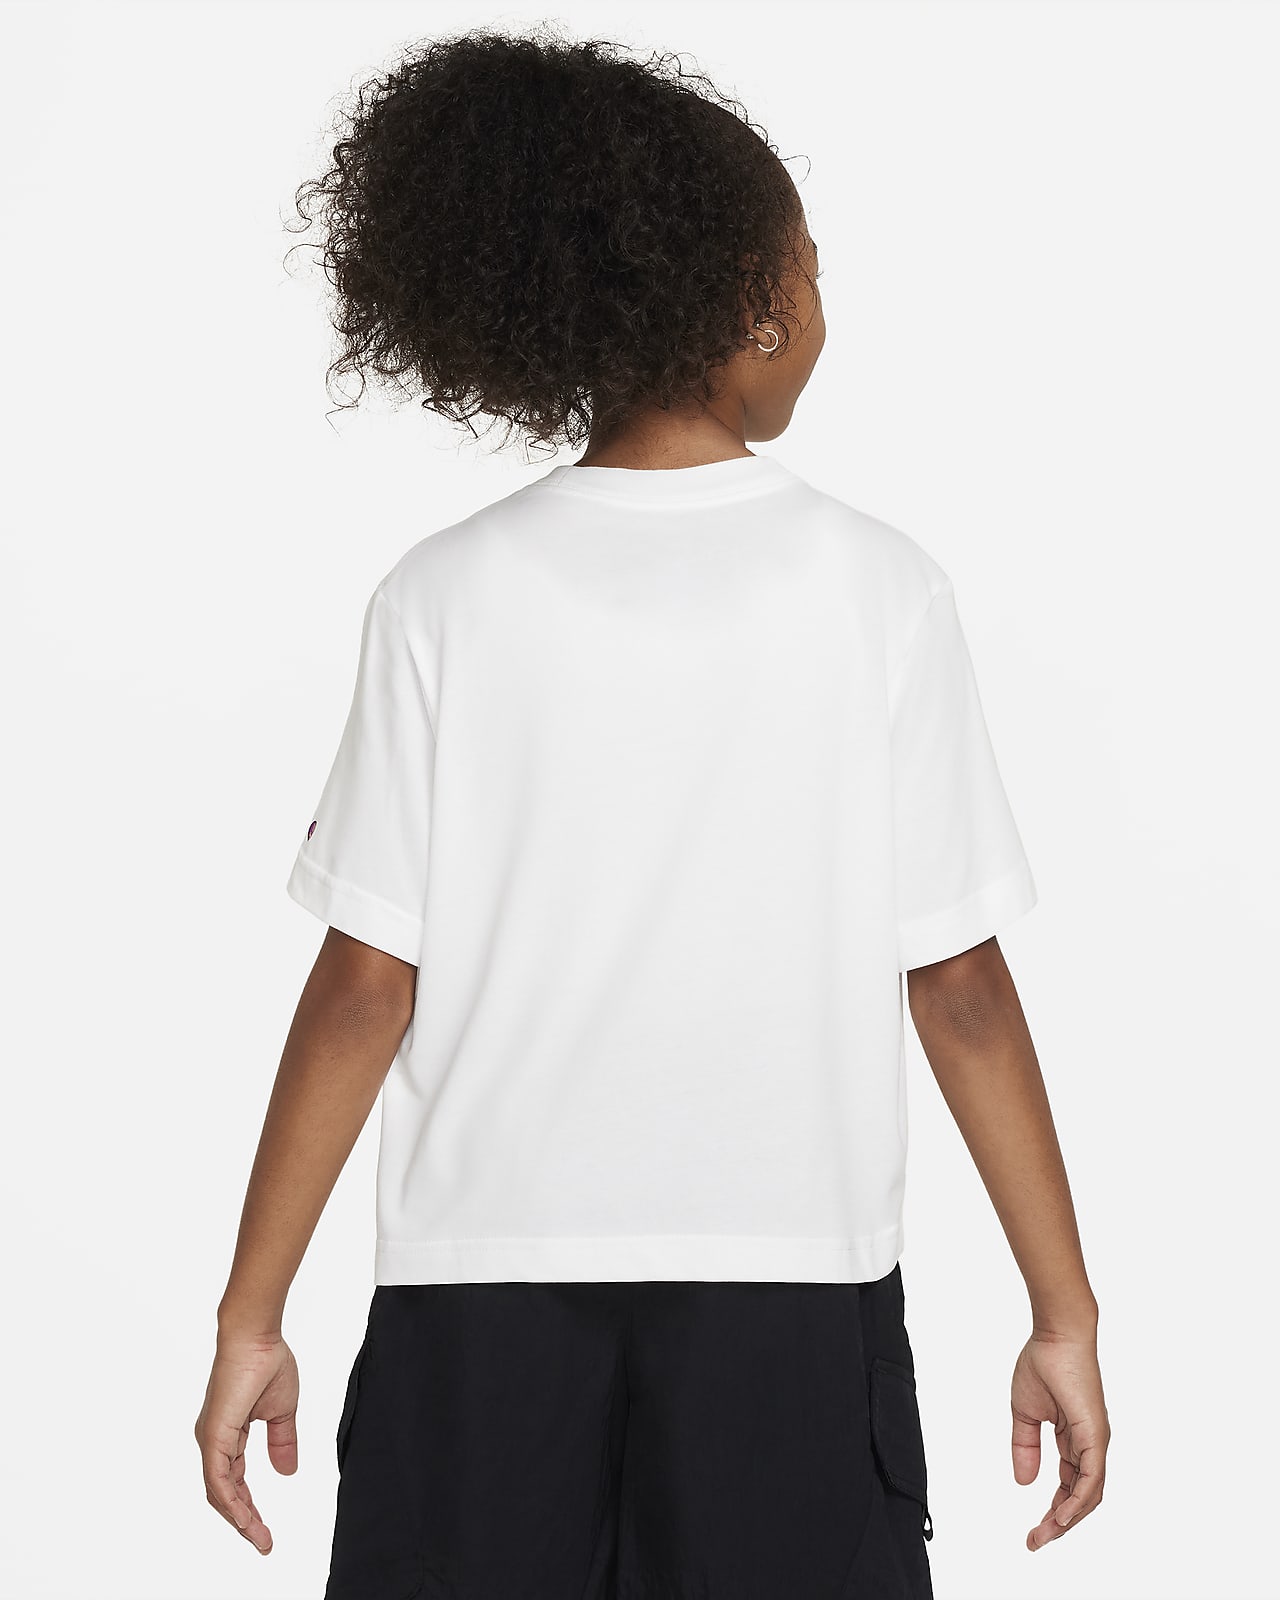 Nike SB x Rayssa Leal Big Kids' (Girls') Dri-FIT T-Shirt. Nike.com